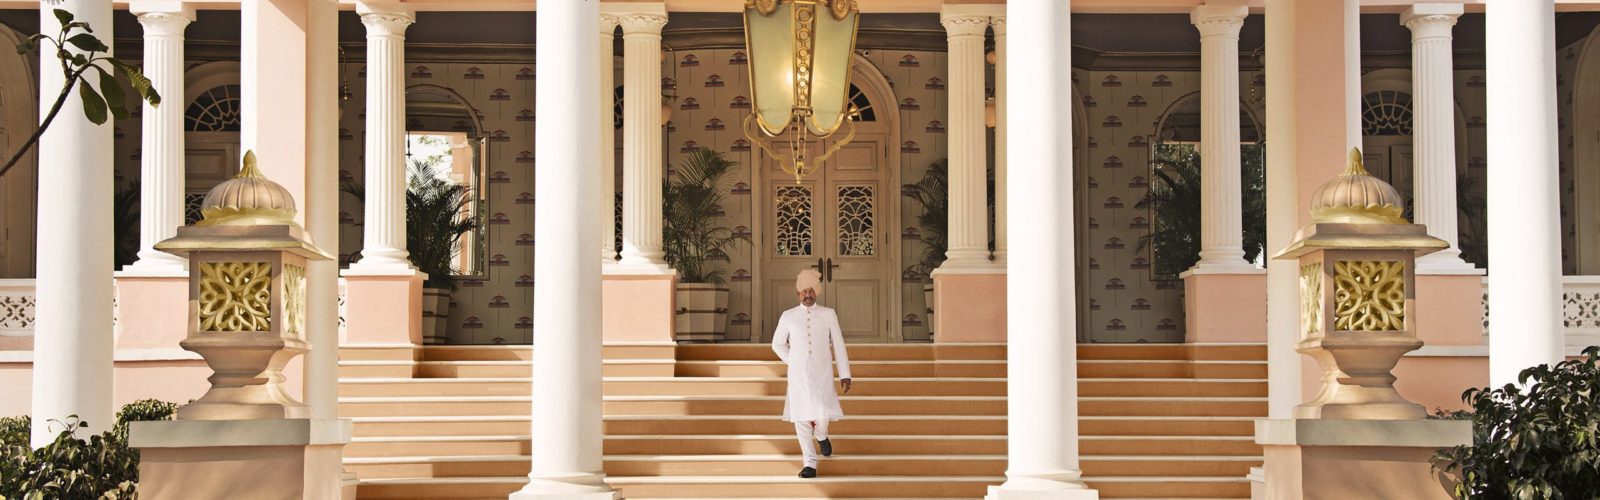 rajmahal-palace-jaipur-rajasthan-india